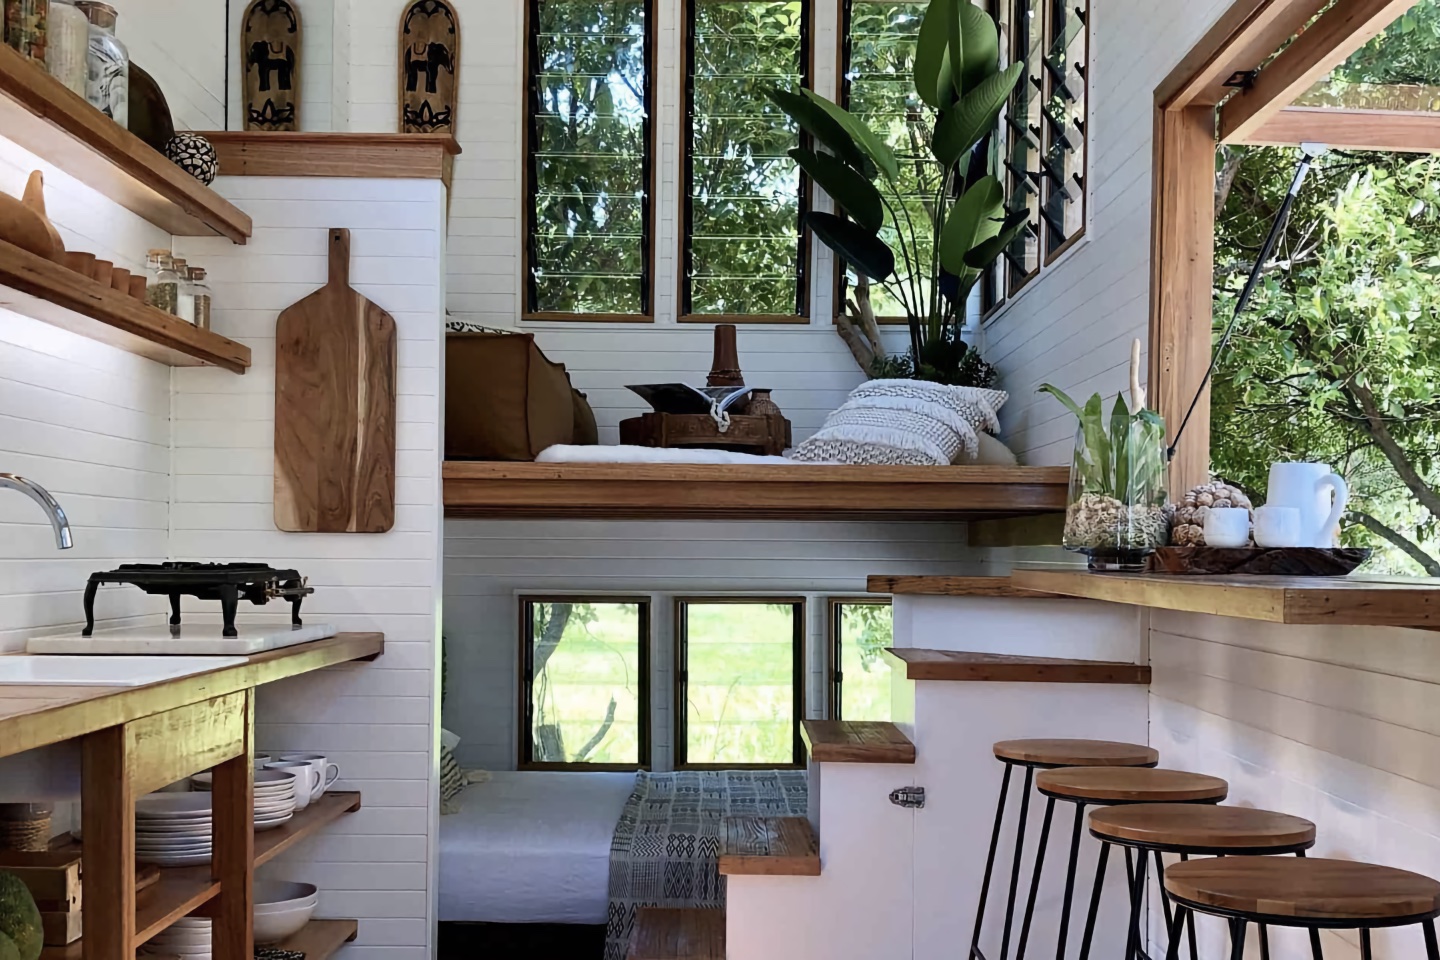 https://www.yankodesign.com/images/design_news/2021/09/tiny-home-interiors/tiny_home_interiors_micro_living_hero.jpg